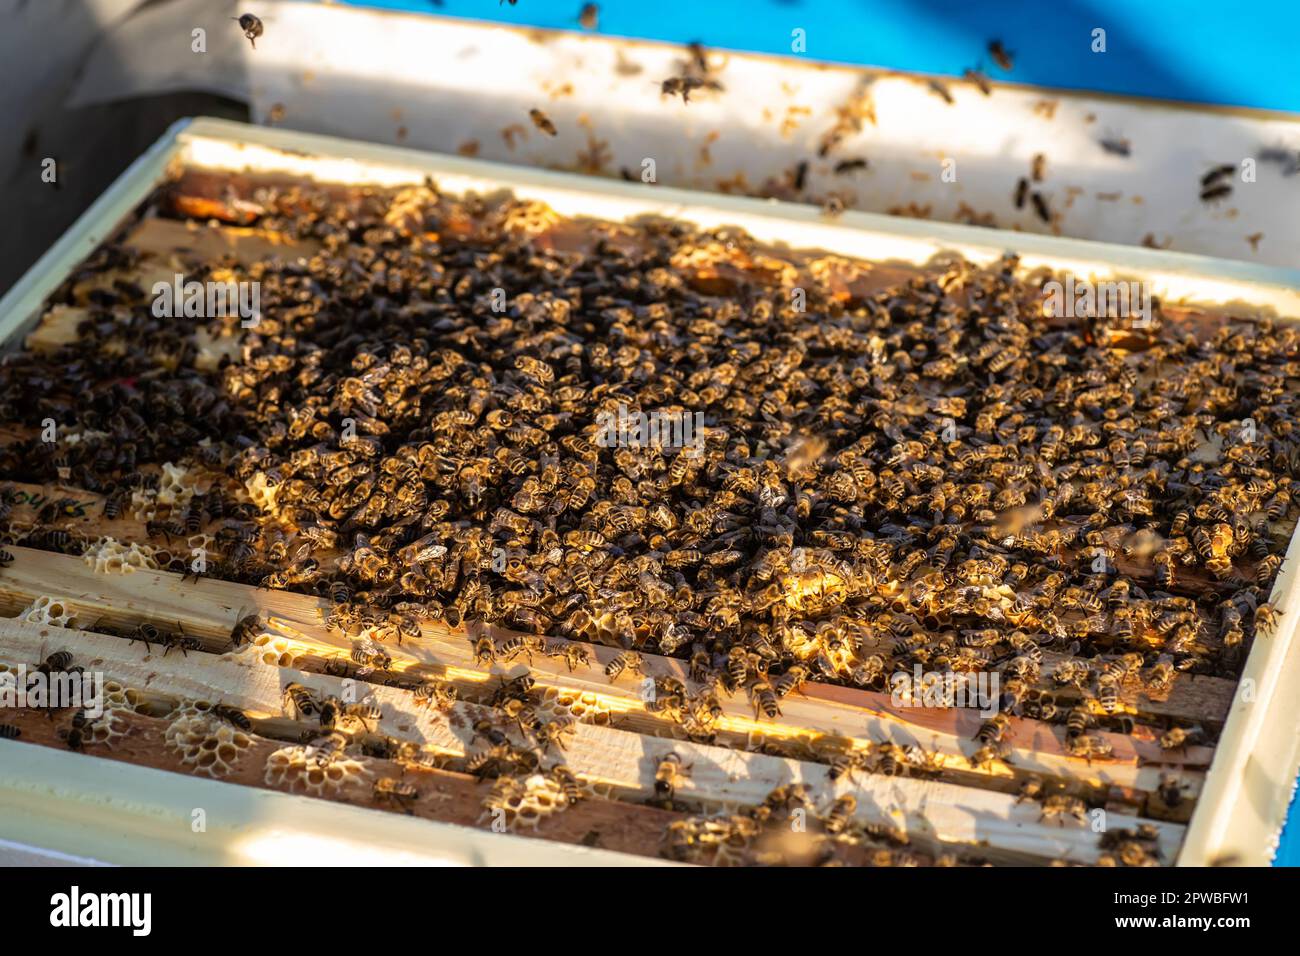 immagine vivida delle api da miele in un alveare, dove le cornici sono riempite di miele naturale che ha un sapore e un aroma meravigliosi Foto Stock